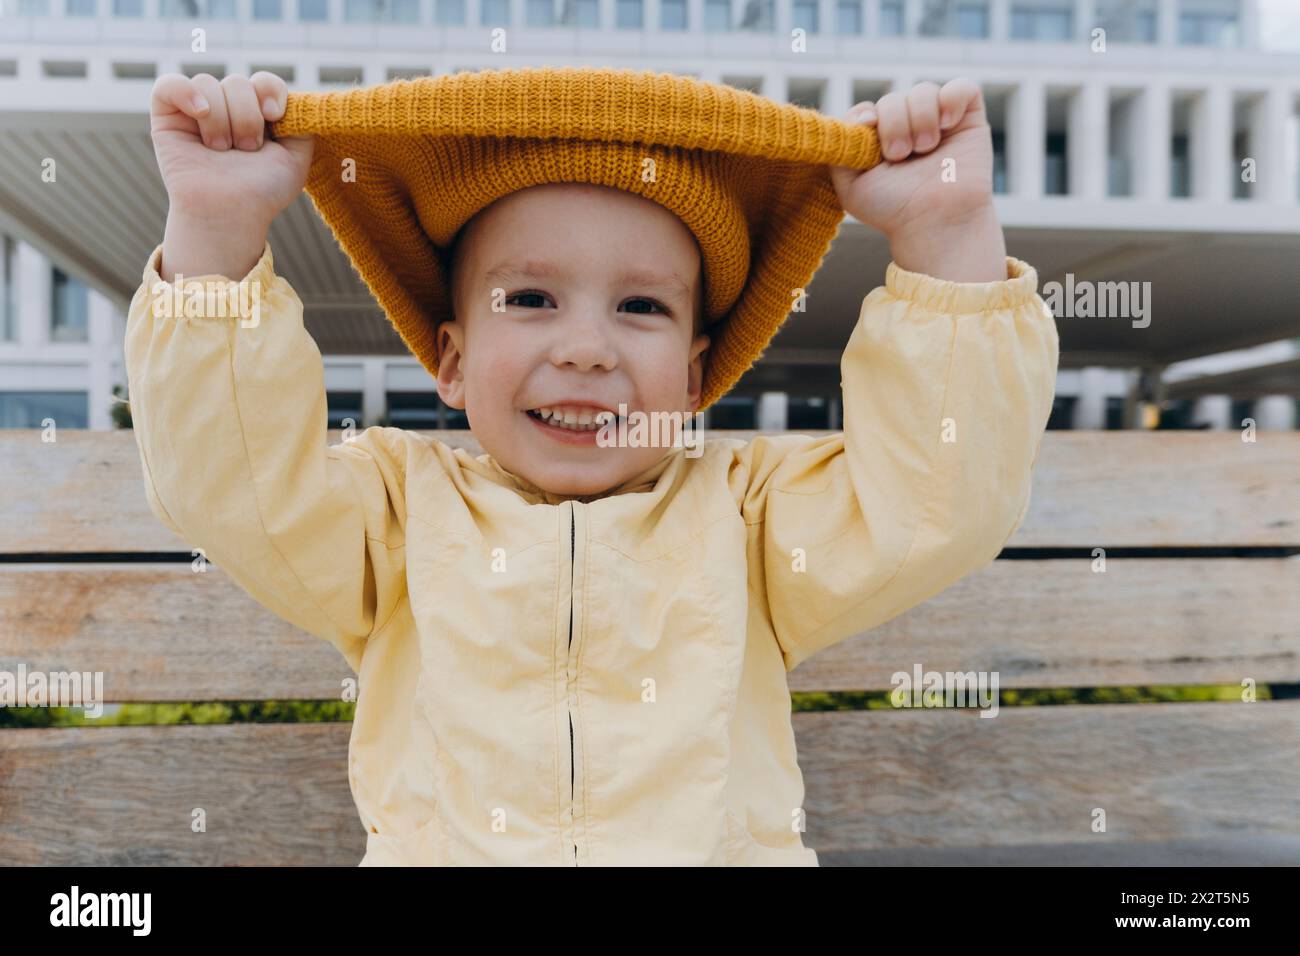 Smiling boy pulling orange knit hat Stock Photo